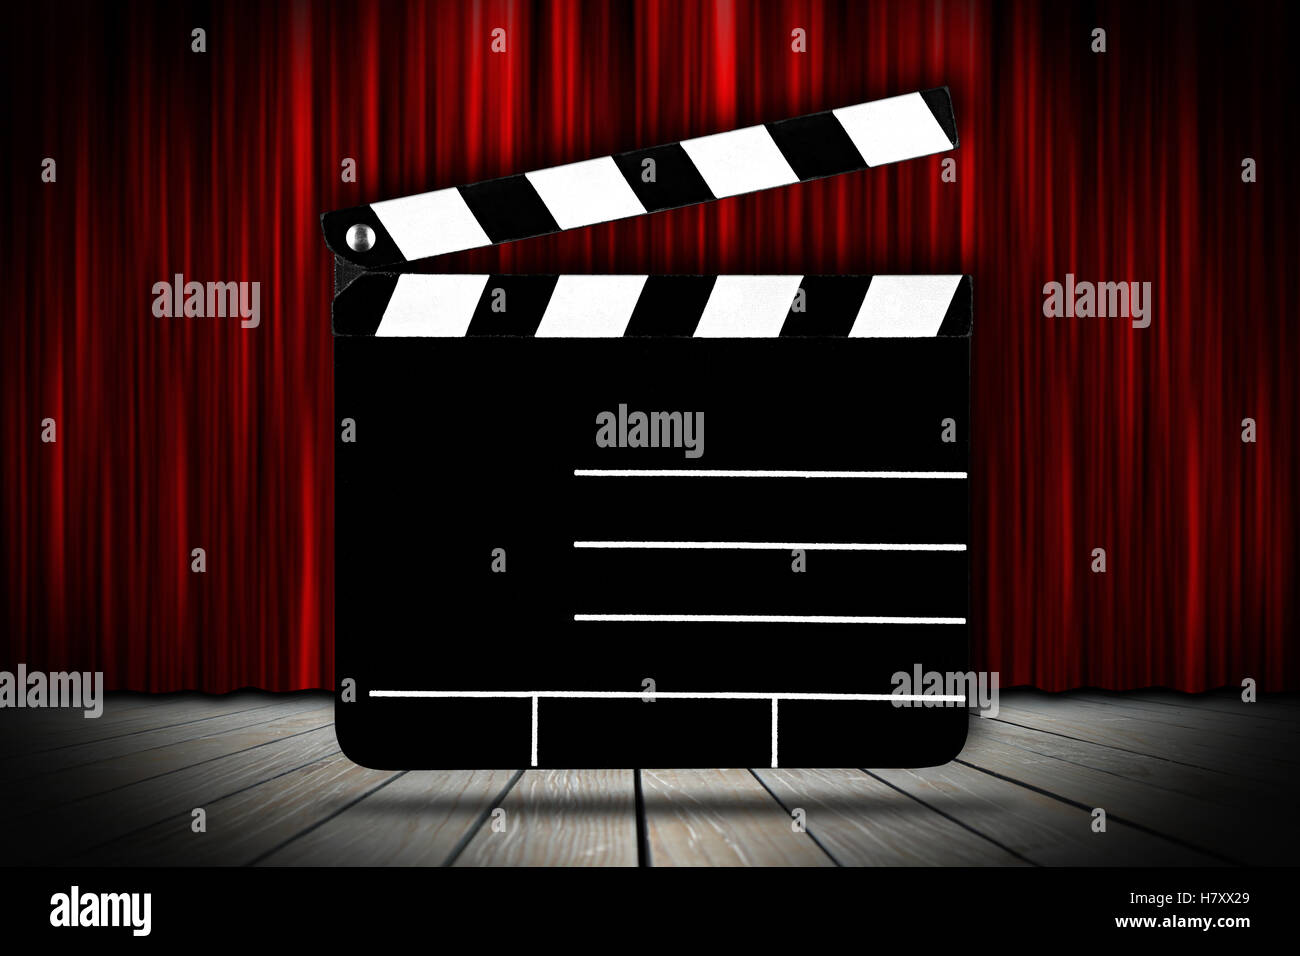 Cinema modello di voucher con vuoto vuoto ardesia clapperboard sul palcoscenico teatrale con tende rosse Foto Stock